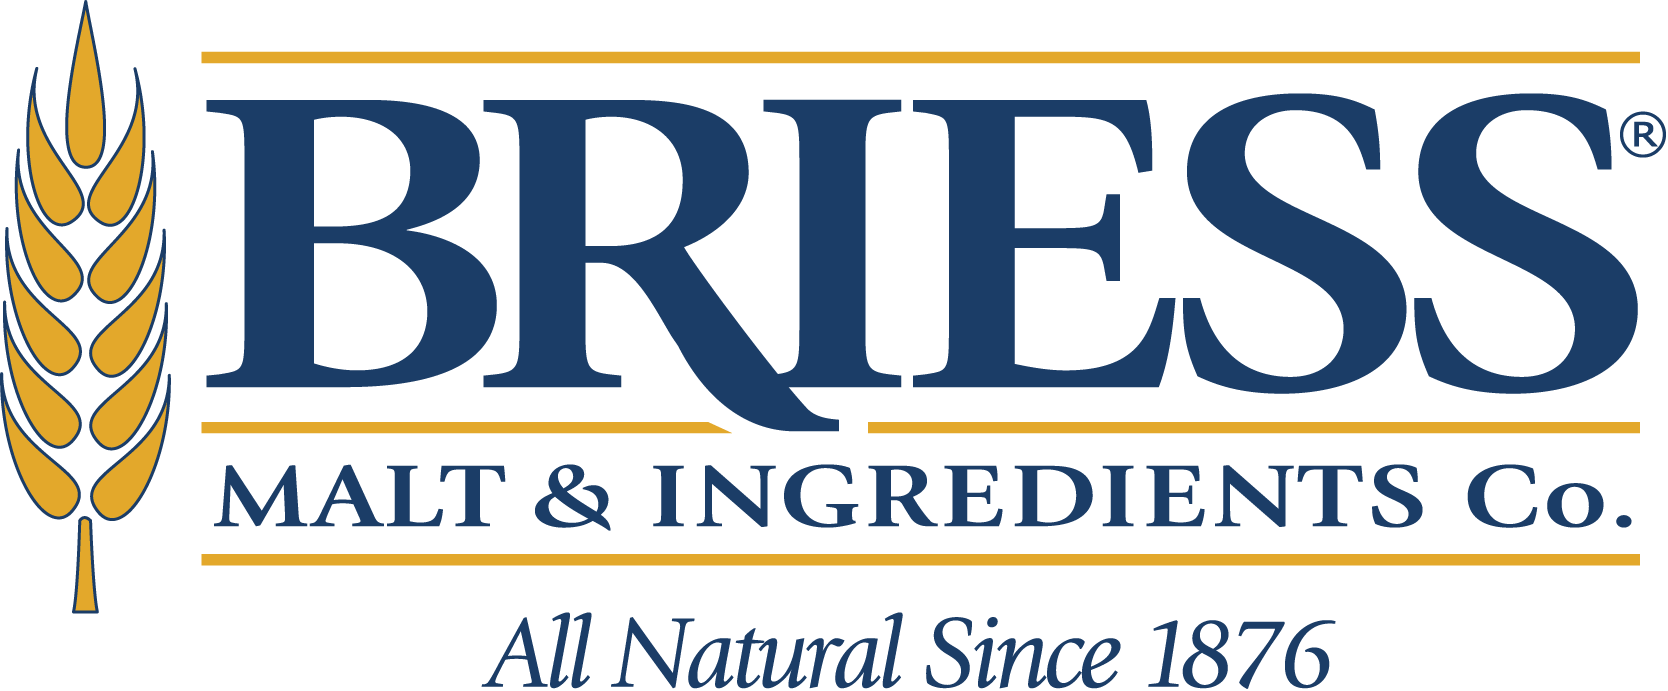 Briess Malt & Ingredients Co Logo